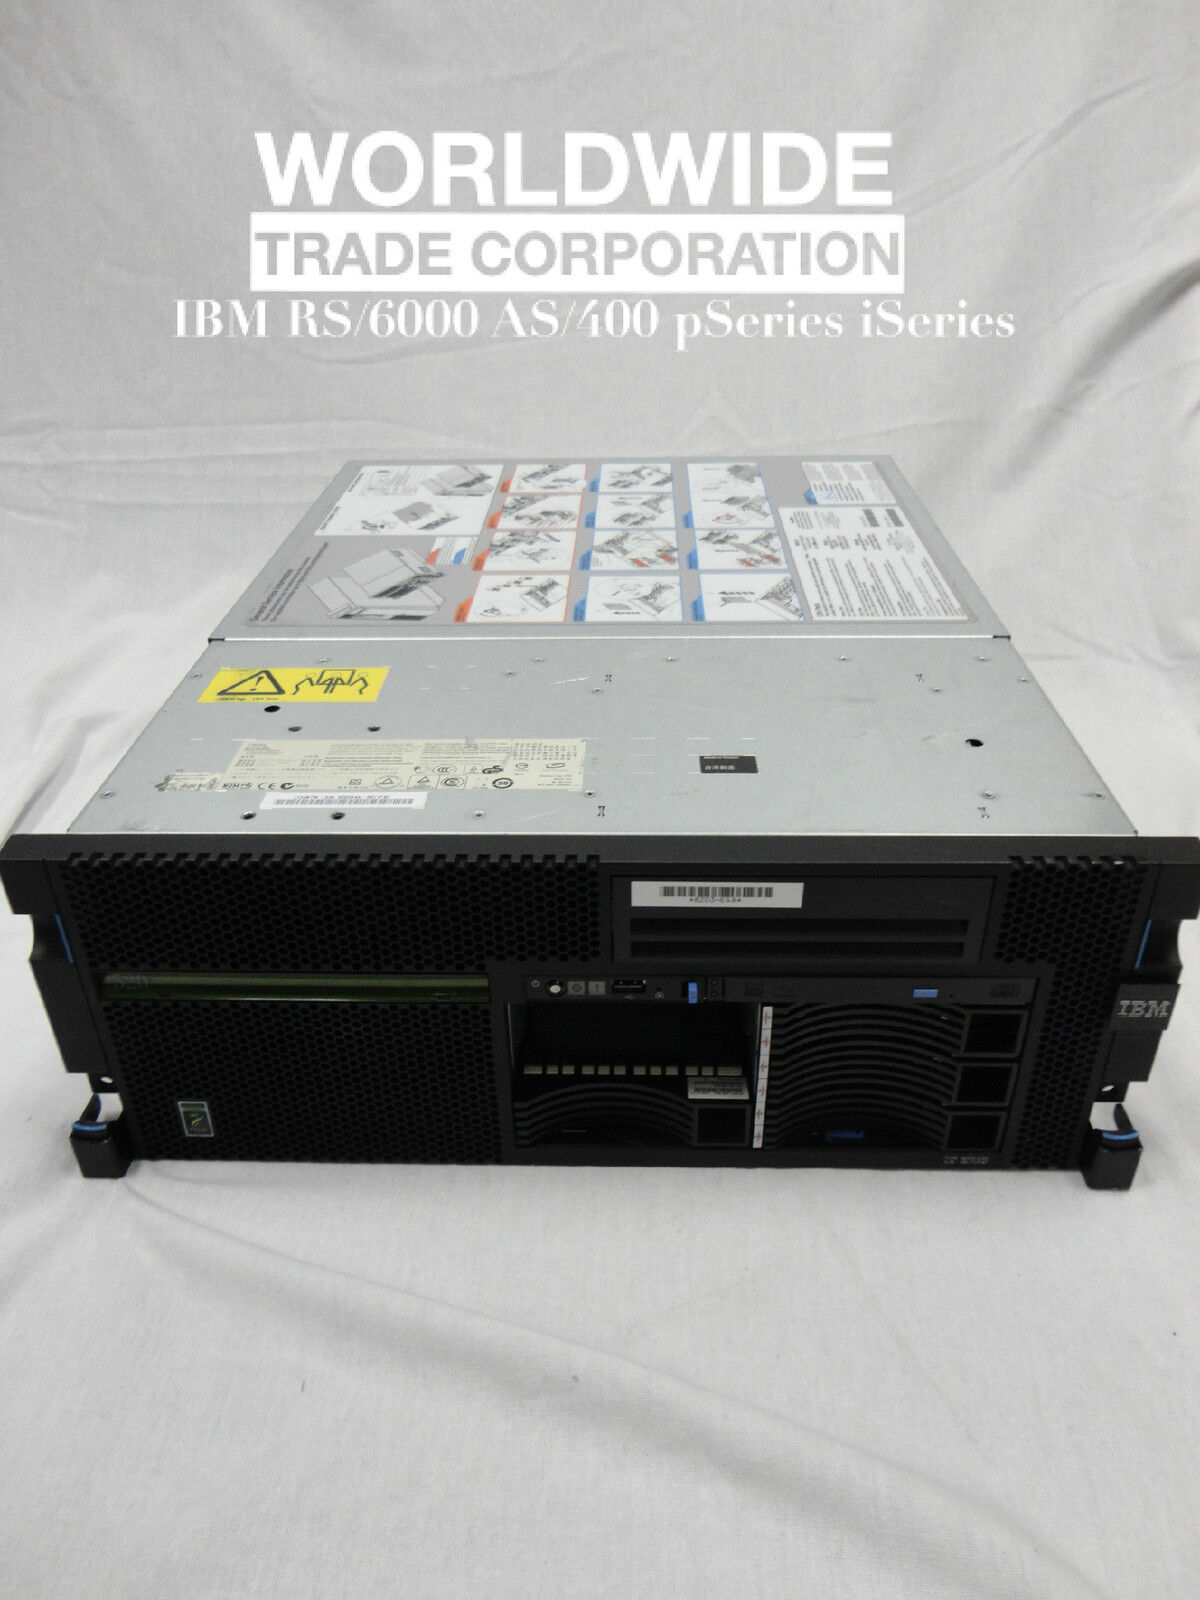 IBM 8203 E4A p520 Server 4.2GHz 1-Core Power6, i series 1OS V7R2 30 user lic.